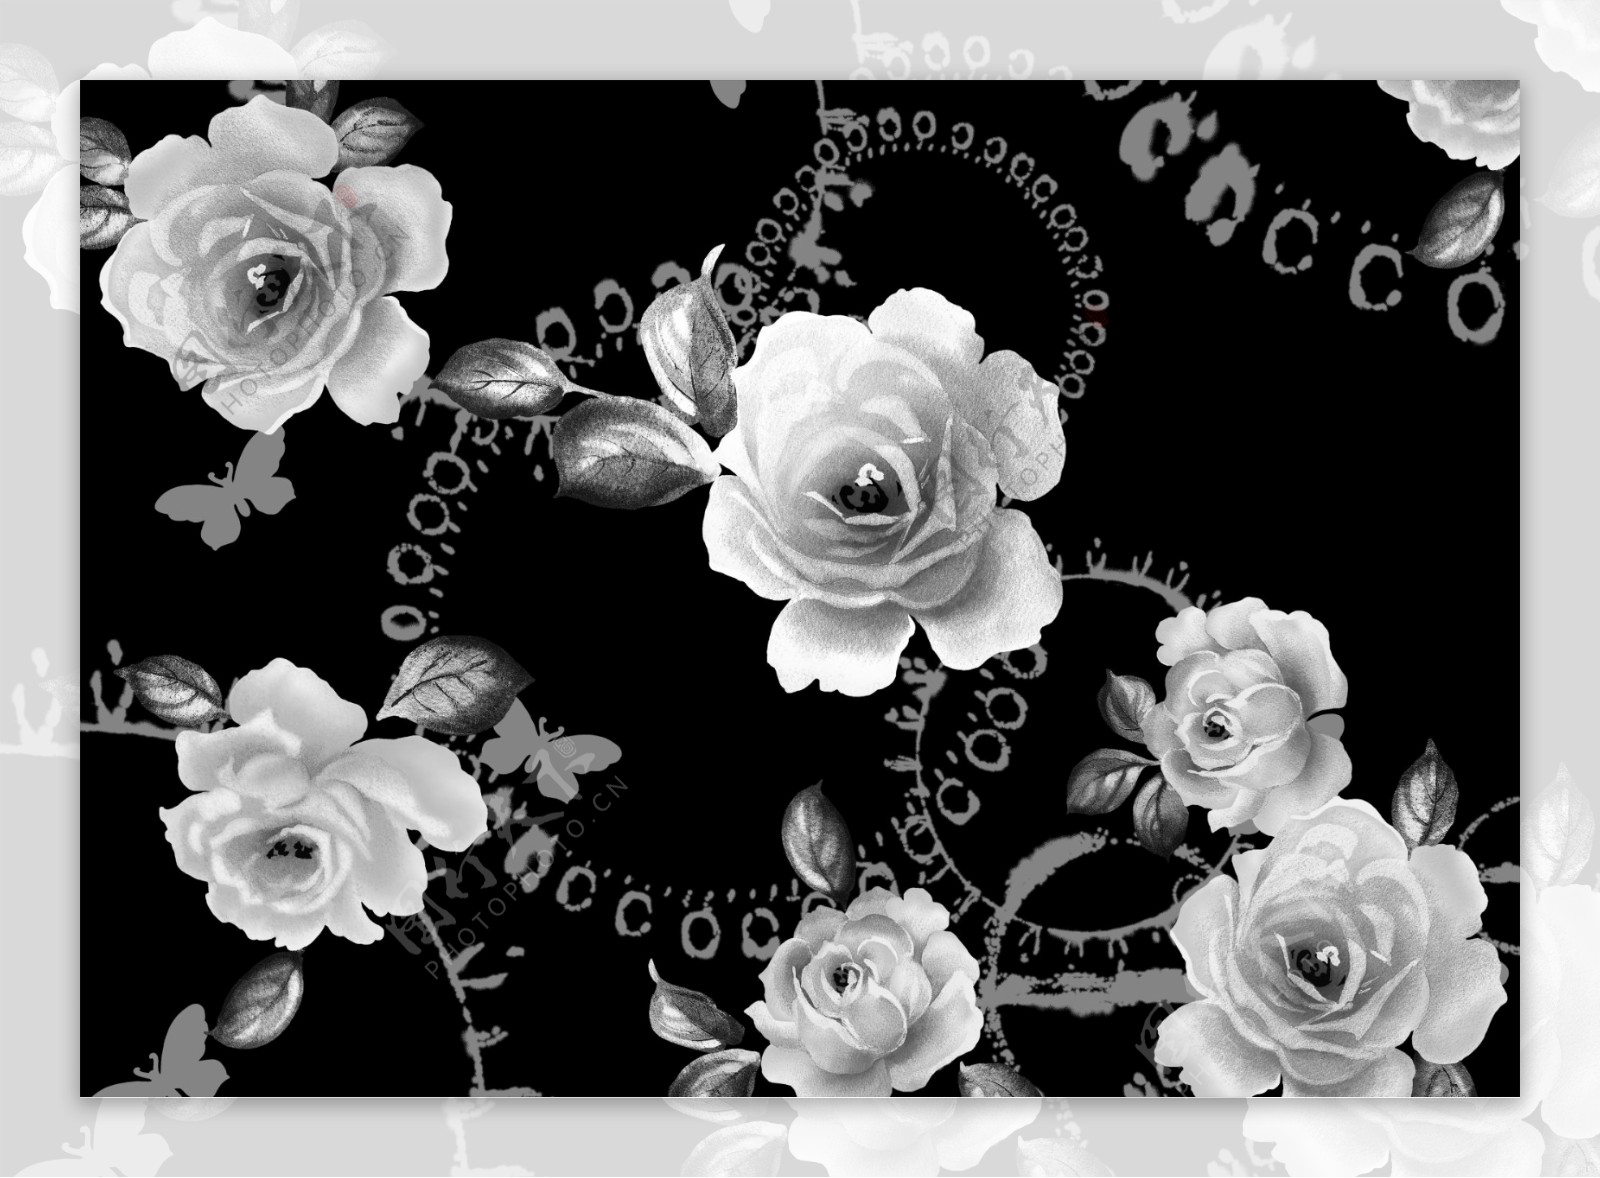 黑白花图片